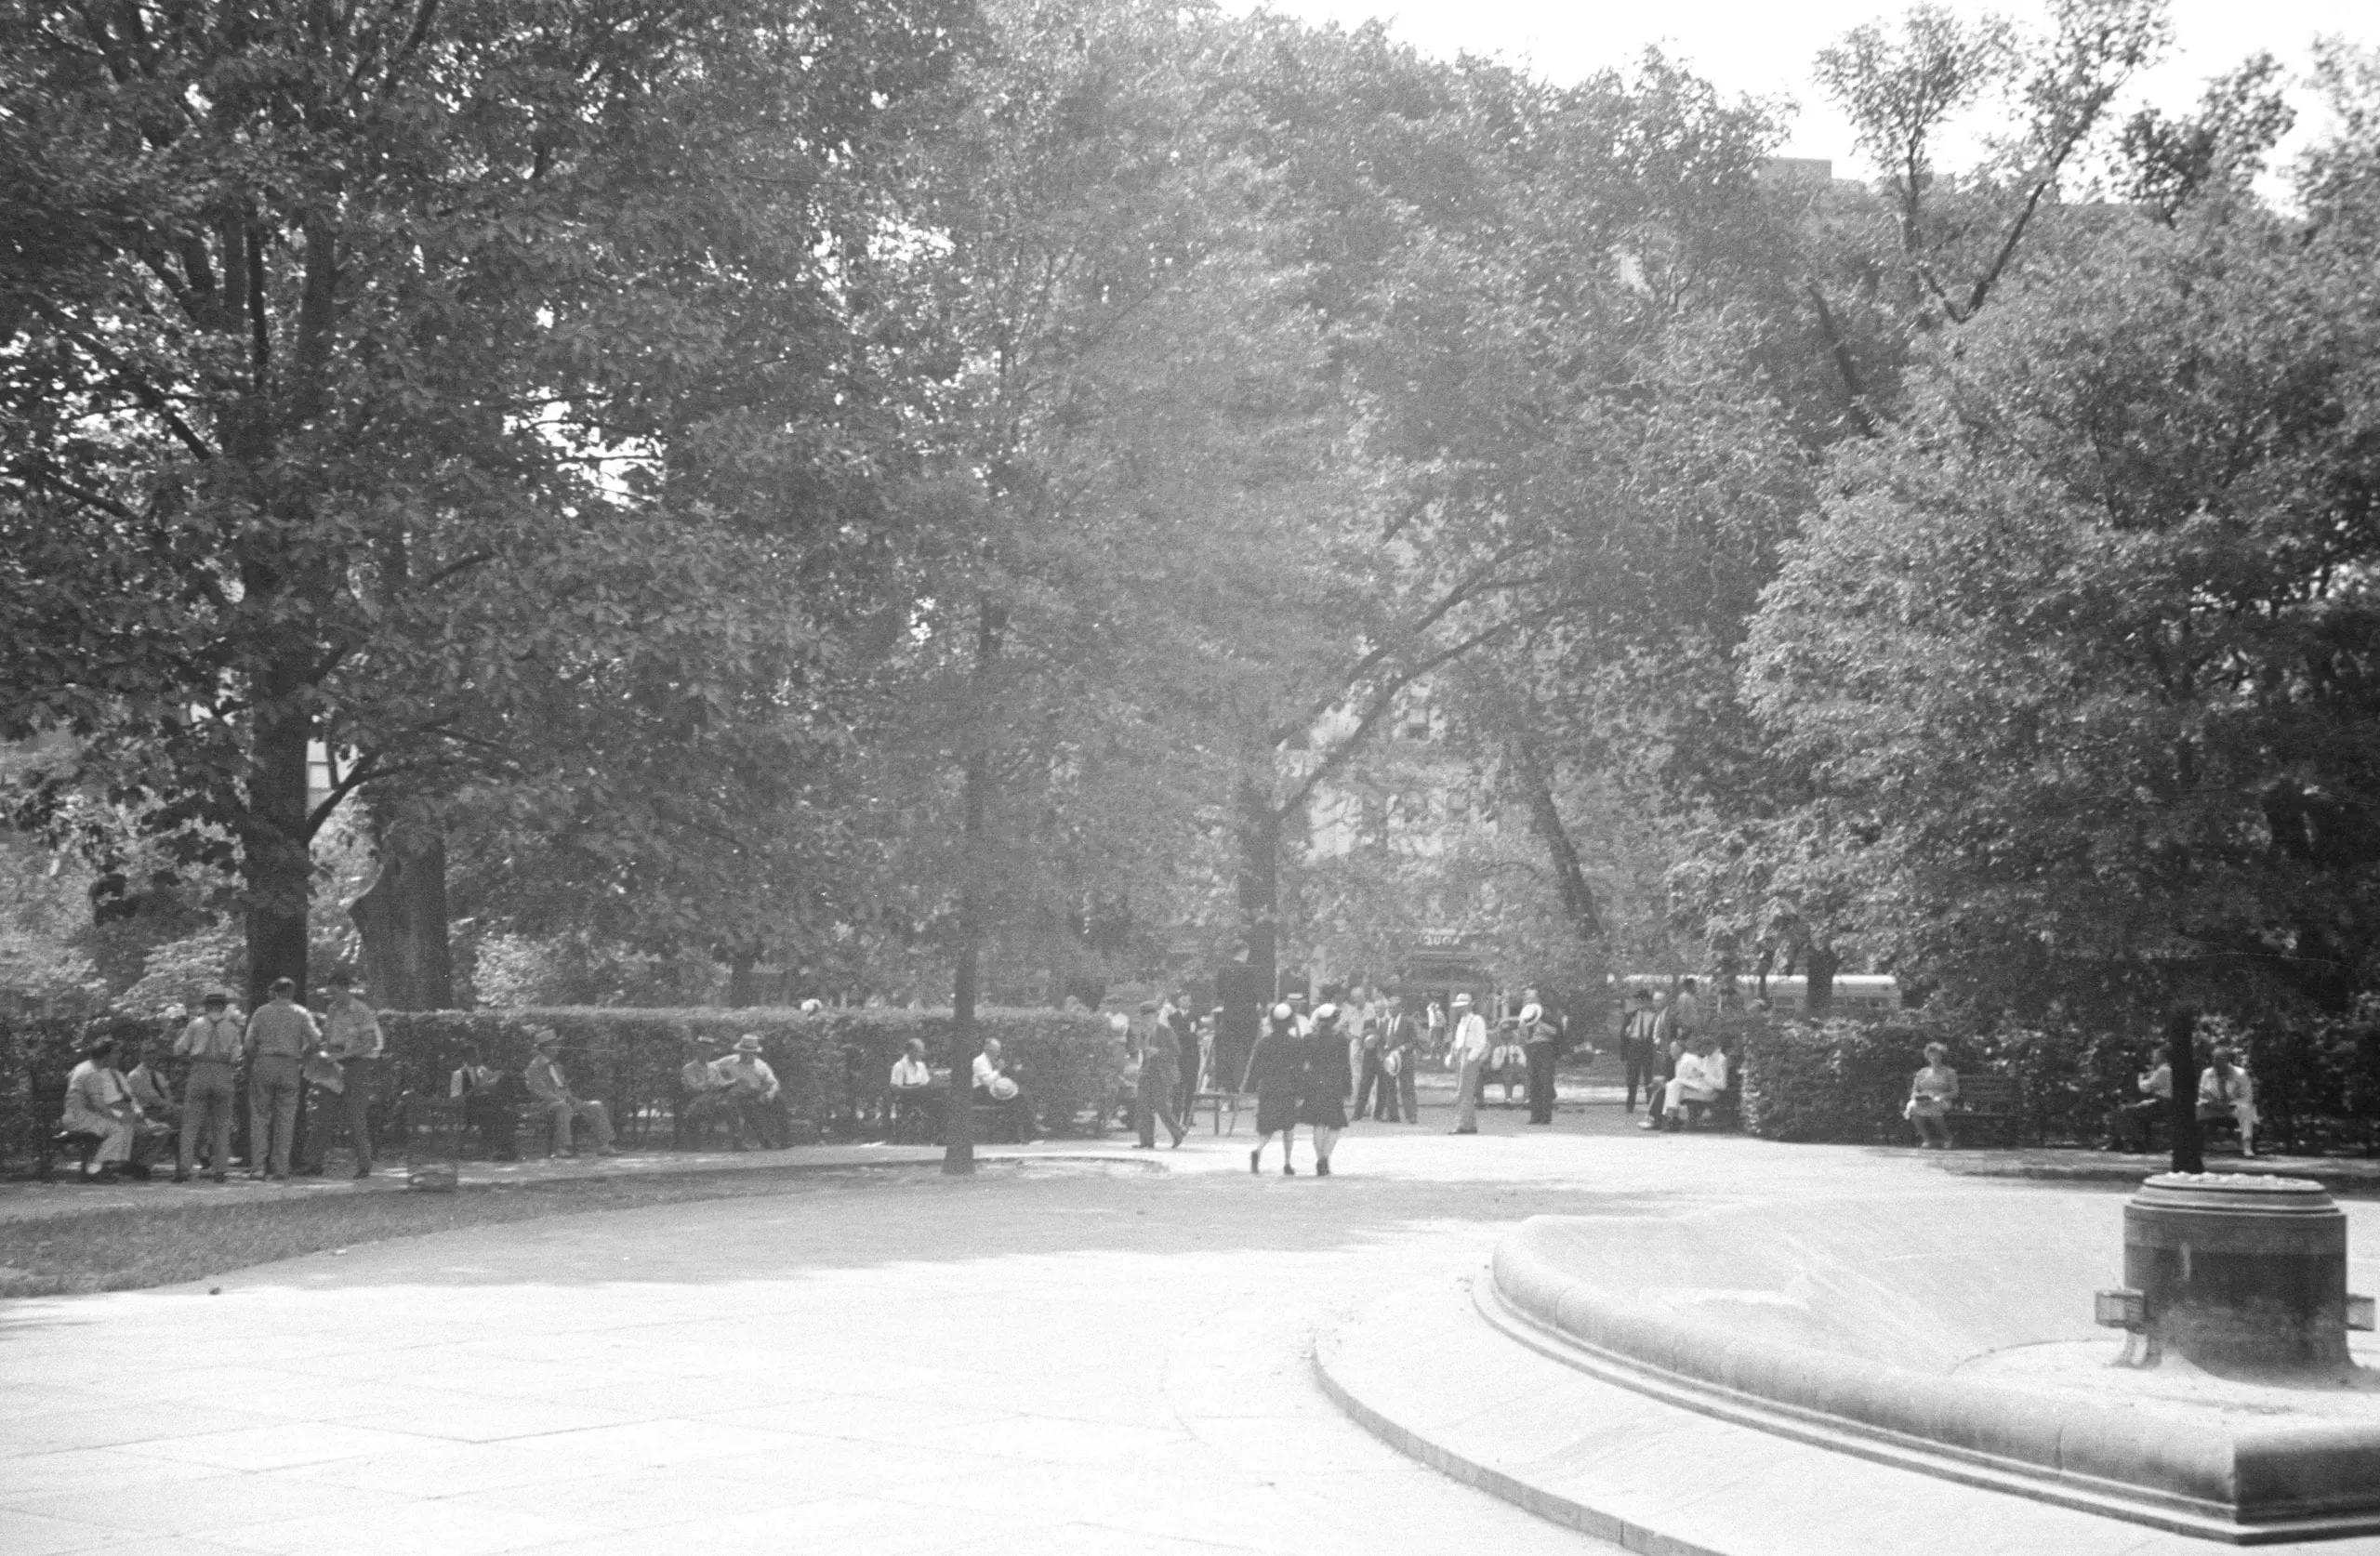 Franklin Square Park in 1943